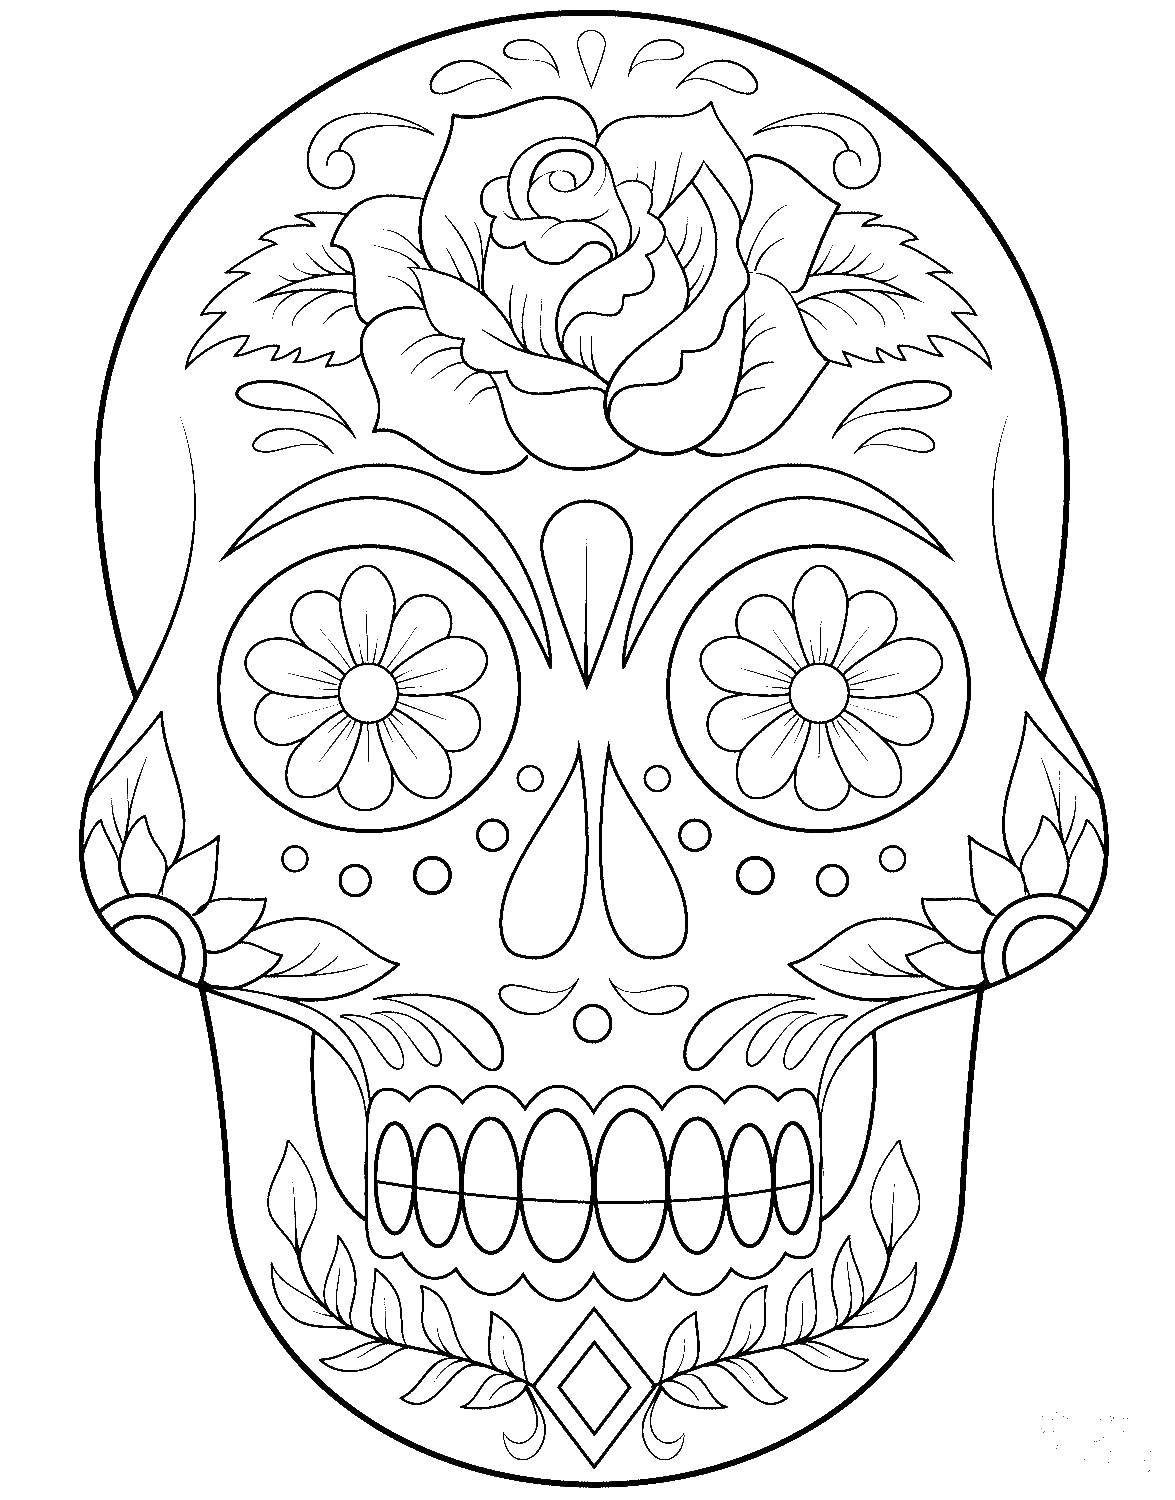 Coloring The skull patterns. Category Skull. Tags:  Skull, patterns.